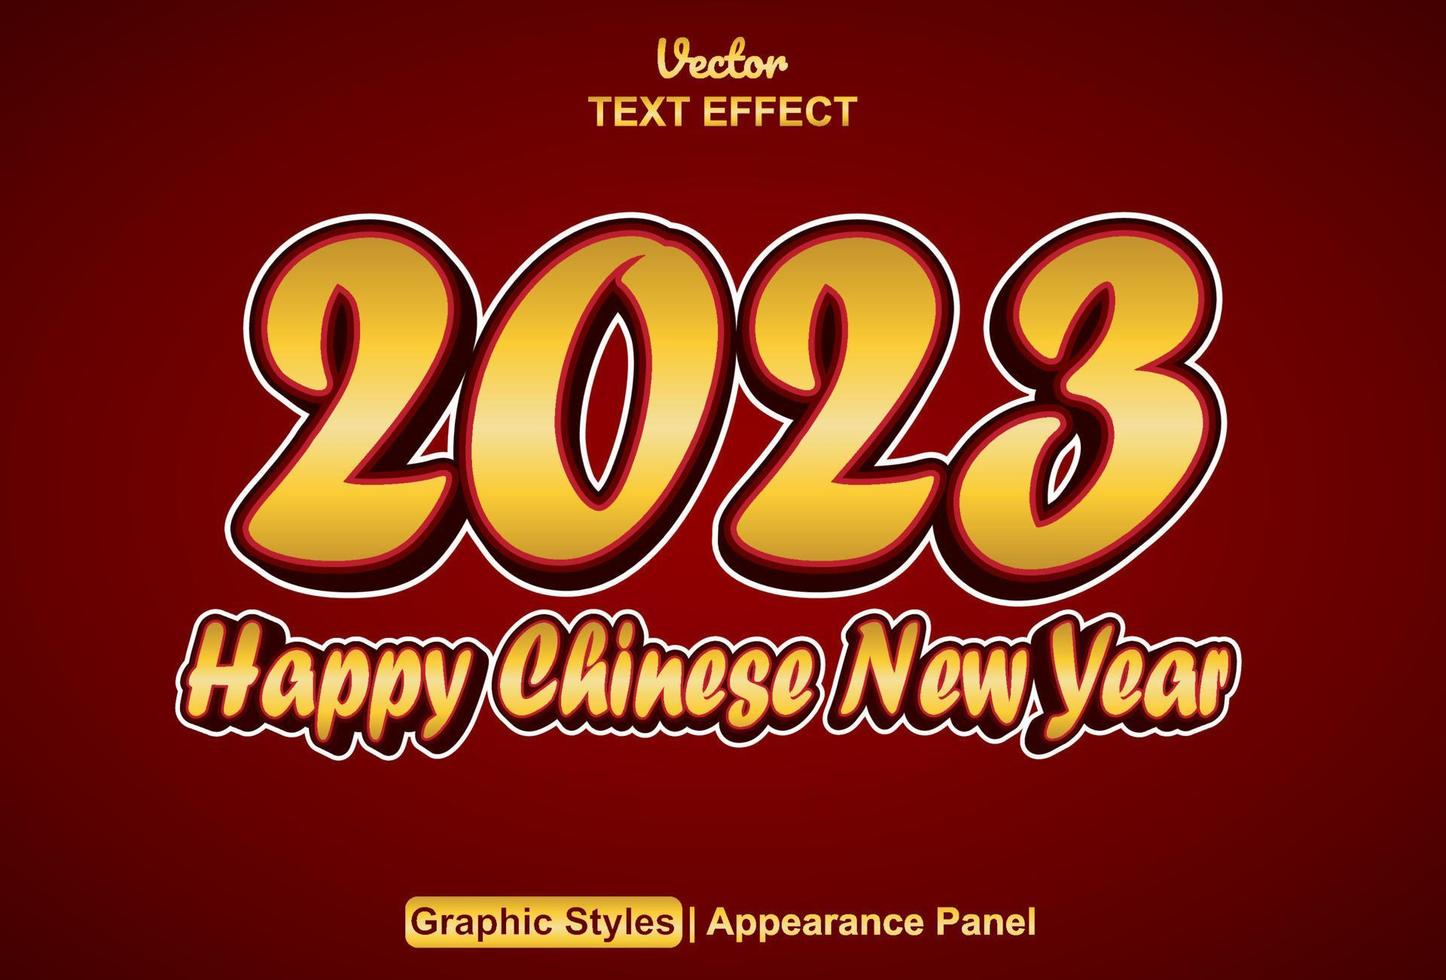 efeito de texto feliz ano novo chinês 2023 com estilo gráfico e editável. vetor